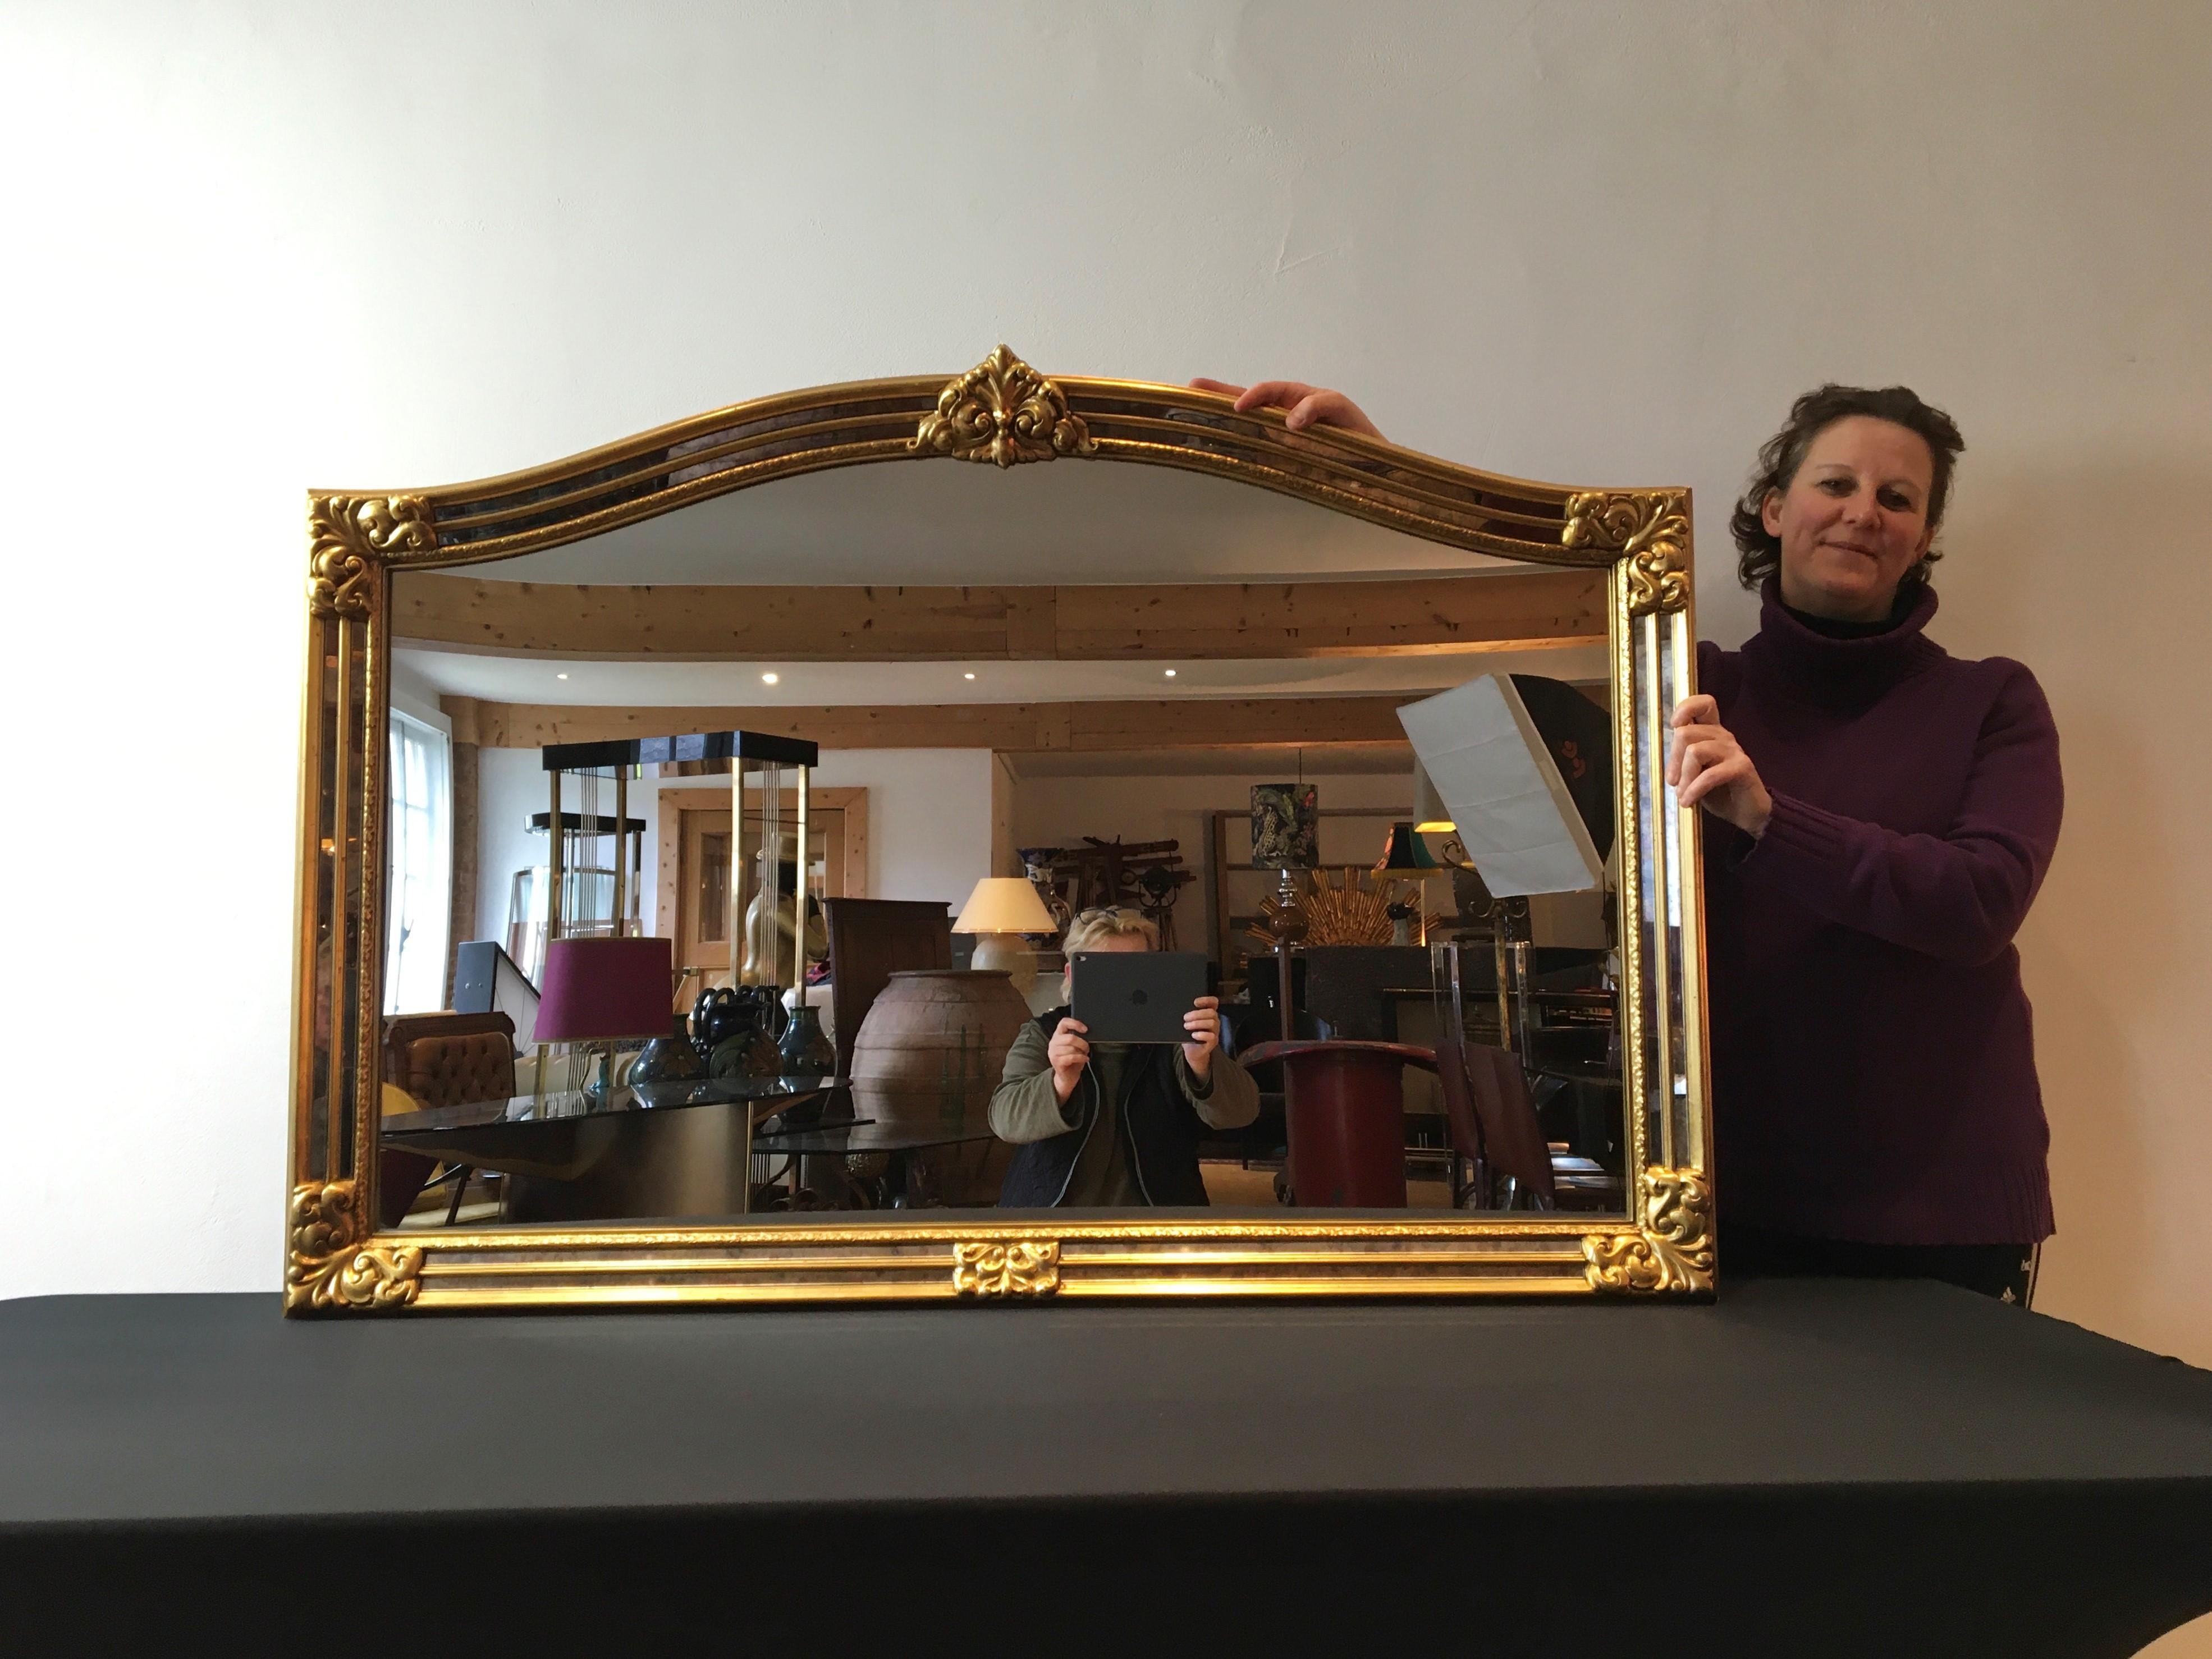 Stilvoller Wandspiegel von Deknudt Belgien.
Deknudt Luxury High Quality Spiegel Made in Belgium.
Dieser große vergoldete Spiegel stammt aus den 1970er Jahren.
Es handelt sich um einen großen Hollywood-Regency-Spiegel mit goldfarbenem Rahmen und